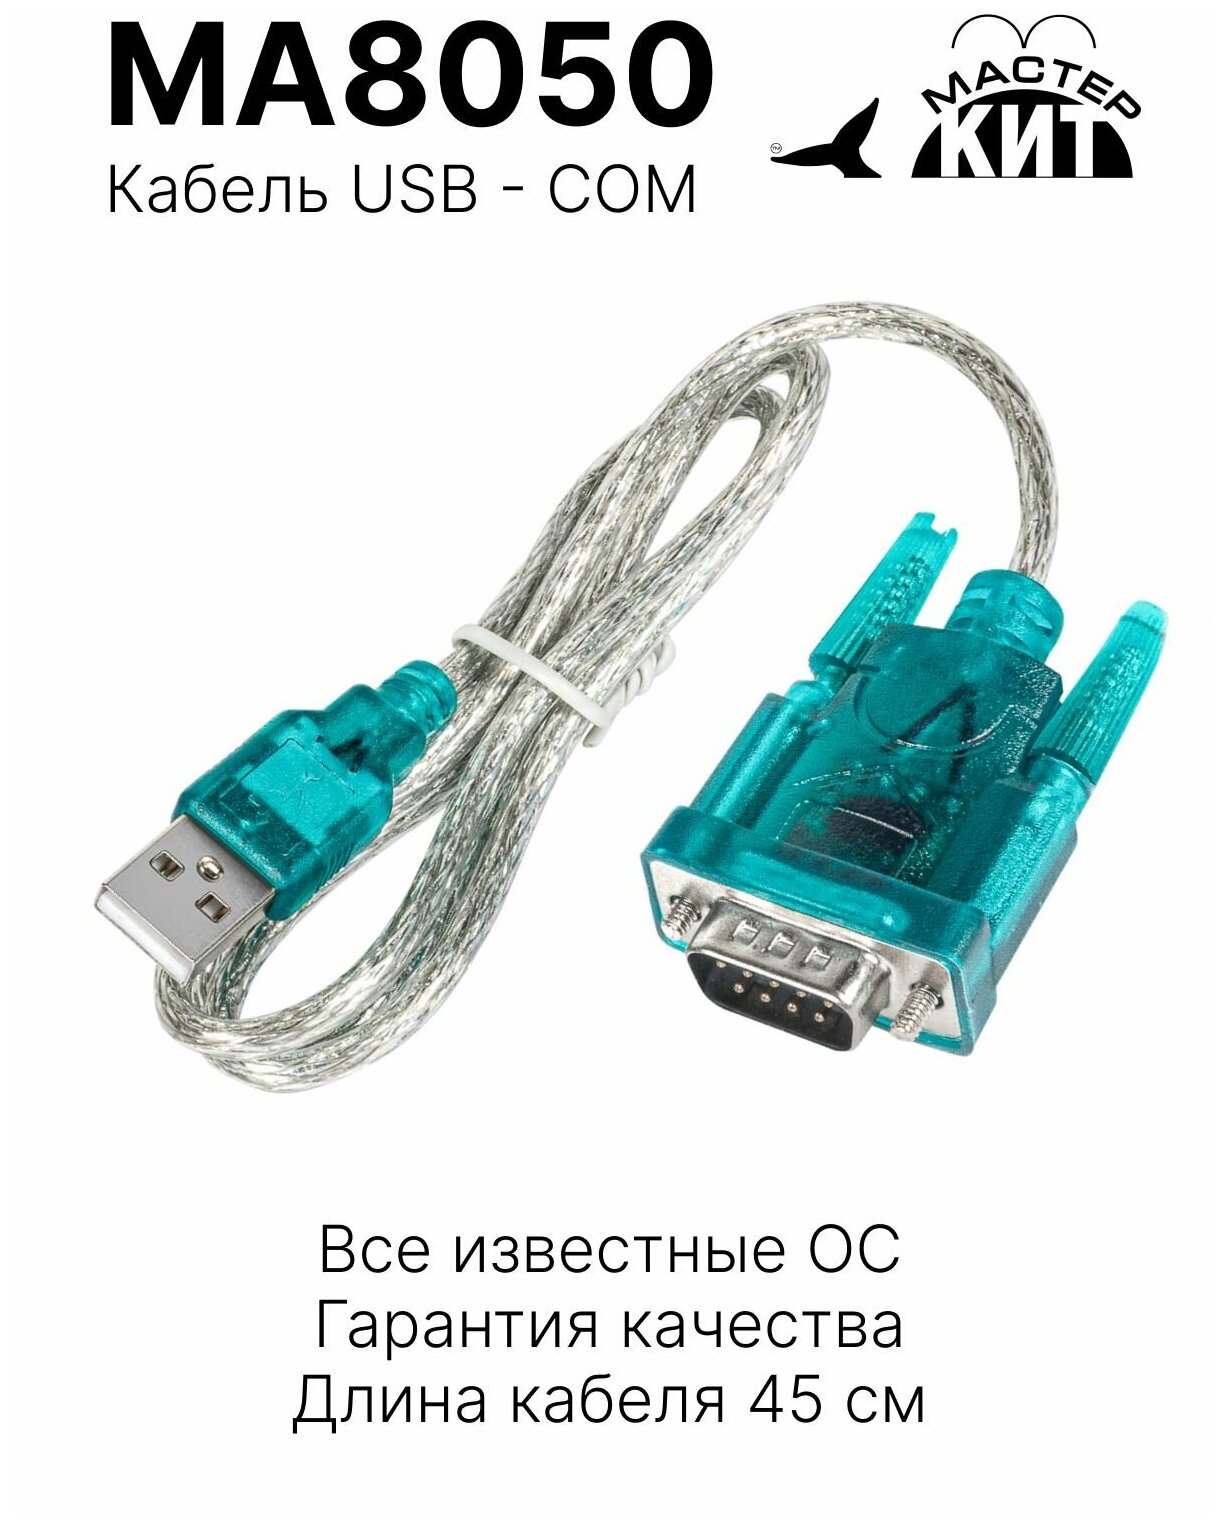 Кабель переходник USB - COM адаптер универсальный сетевой адаптер MA8050 Мастер Кит